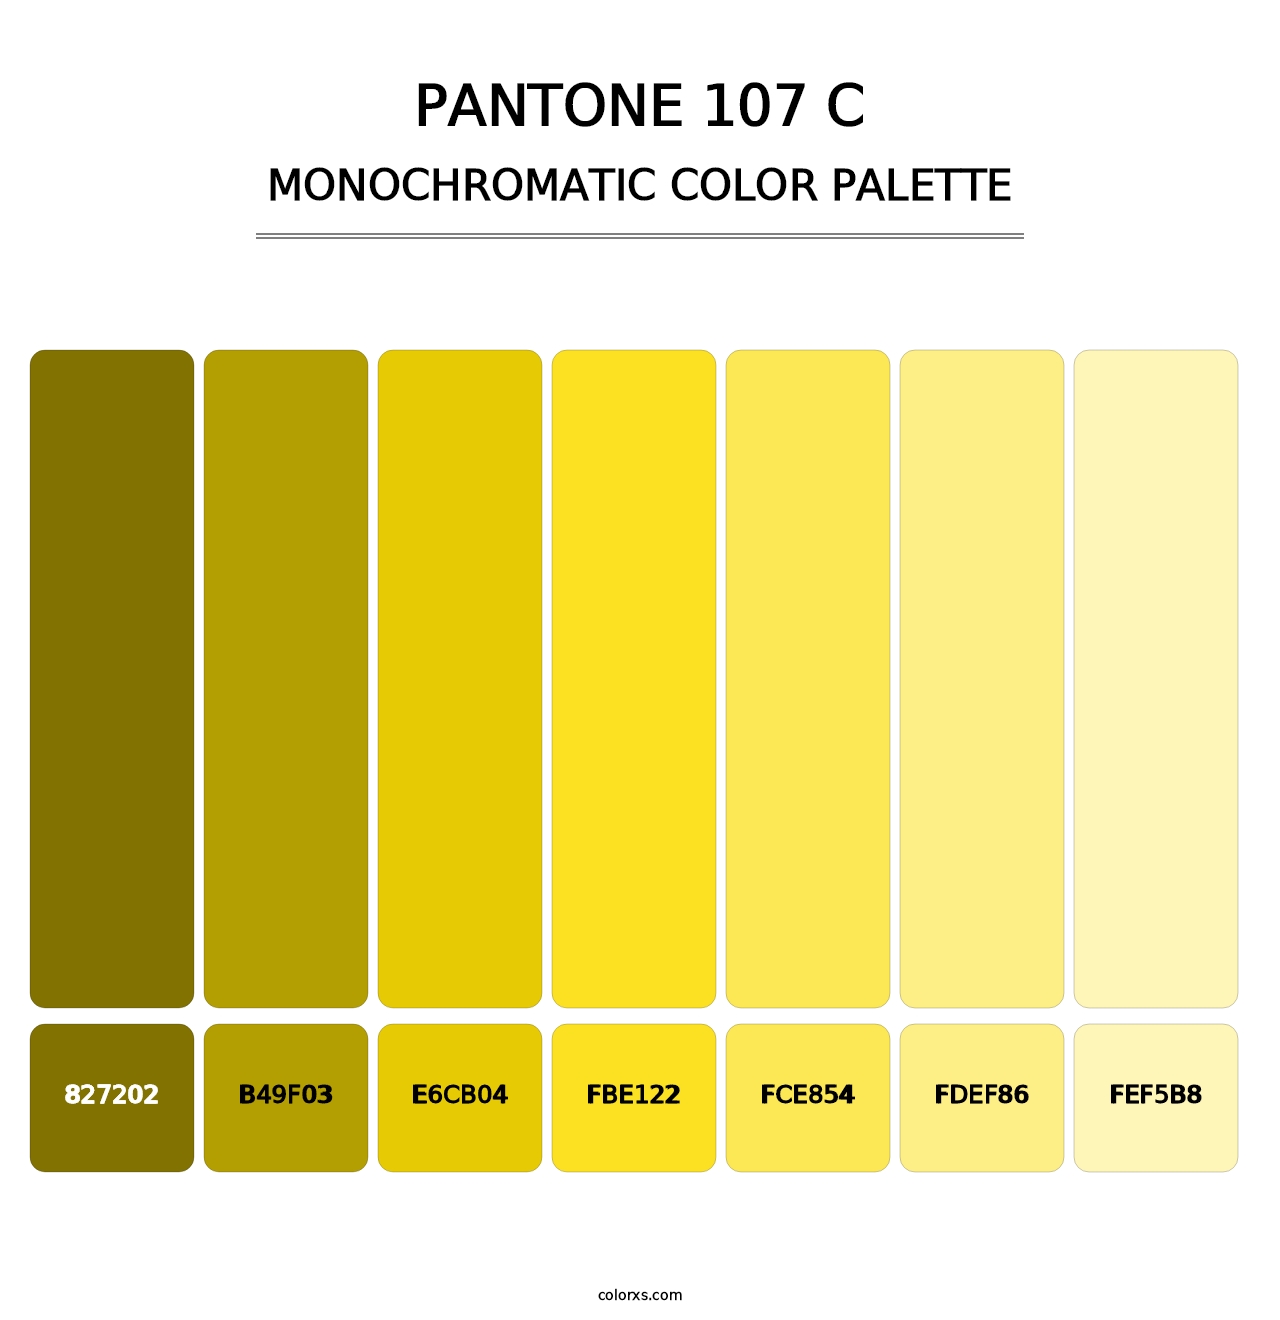 PANTONE 107 C - Monochromatic Color Palette